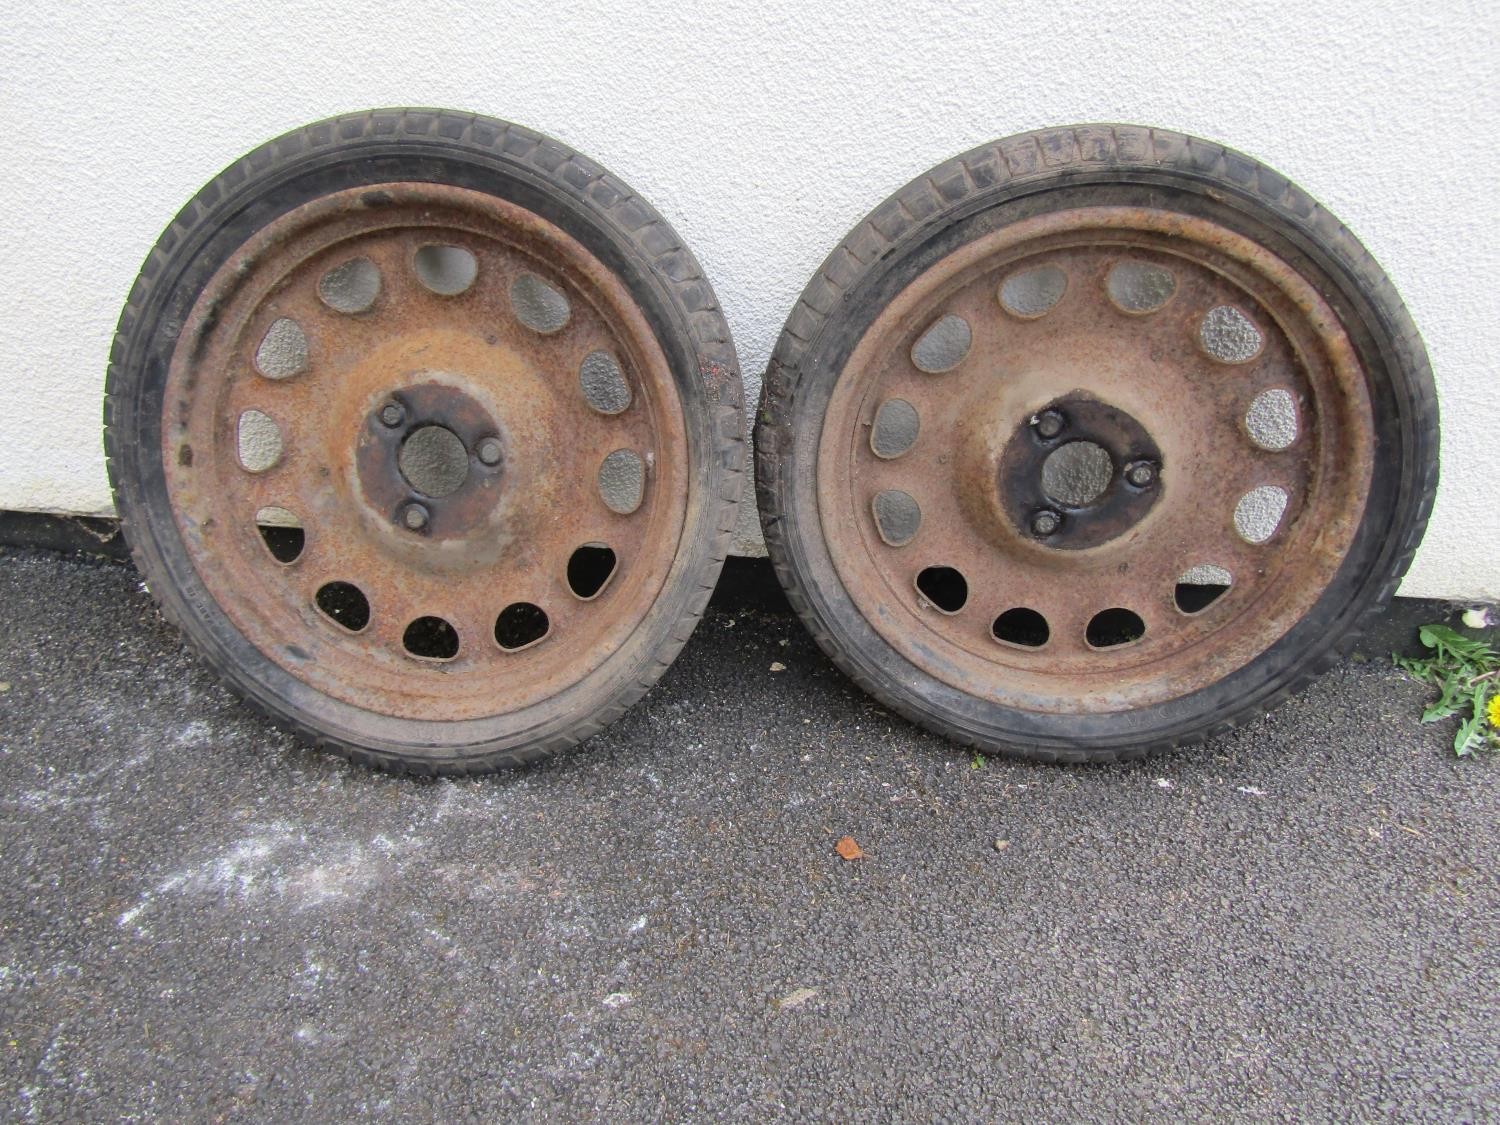 An old pair of artillery wheels